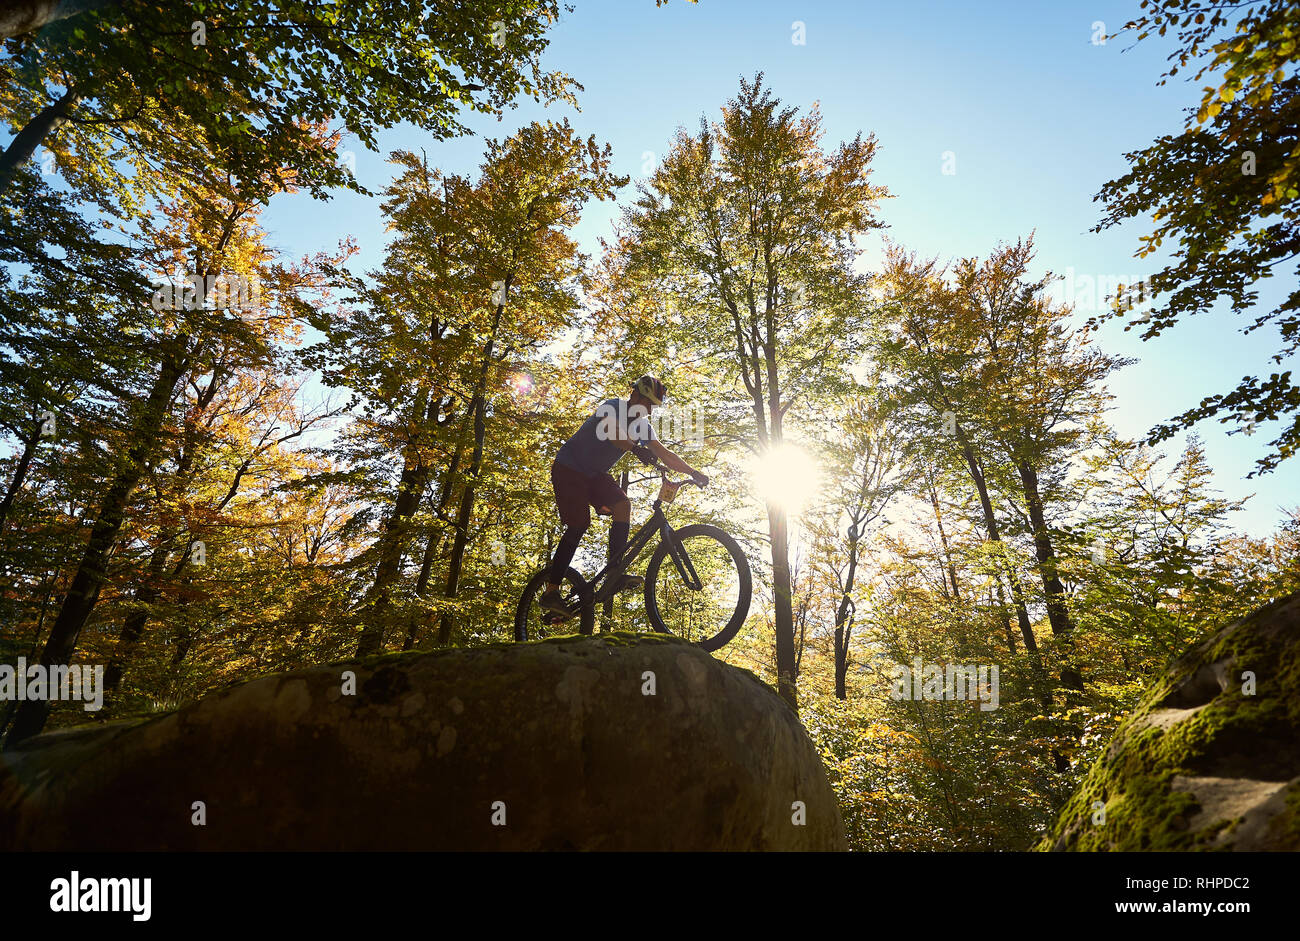 Mâle actif cyclist riding on trial location, ce truc acrobatiques sur big boulder dans la forêt sur une journée ensoleillée d'été. Concept d'extreme sport dangereux Banque D'Images